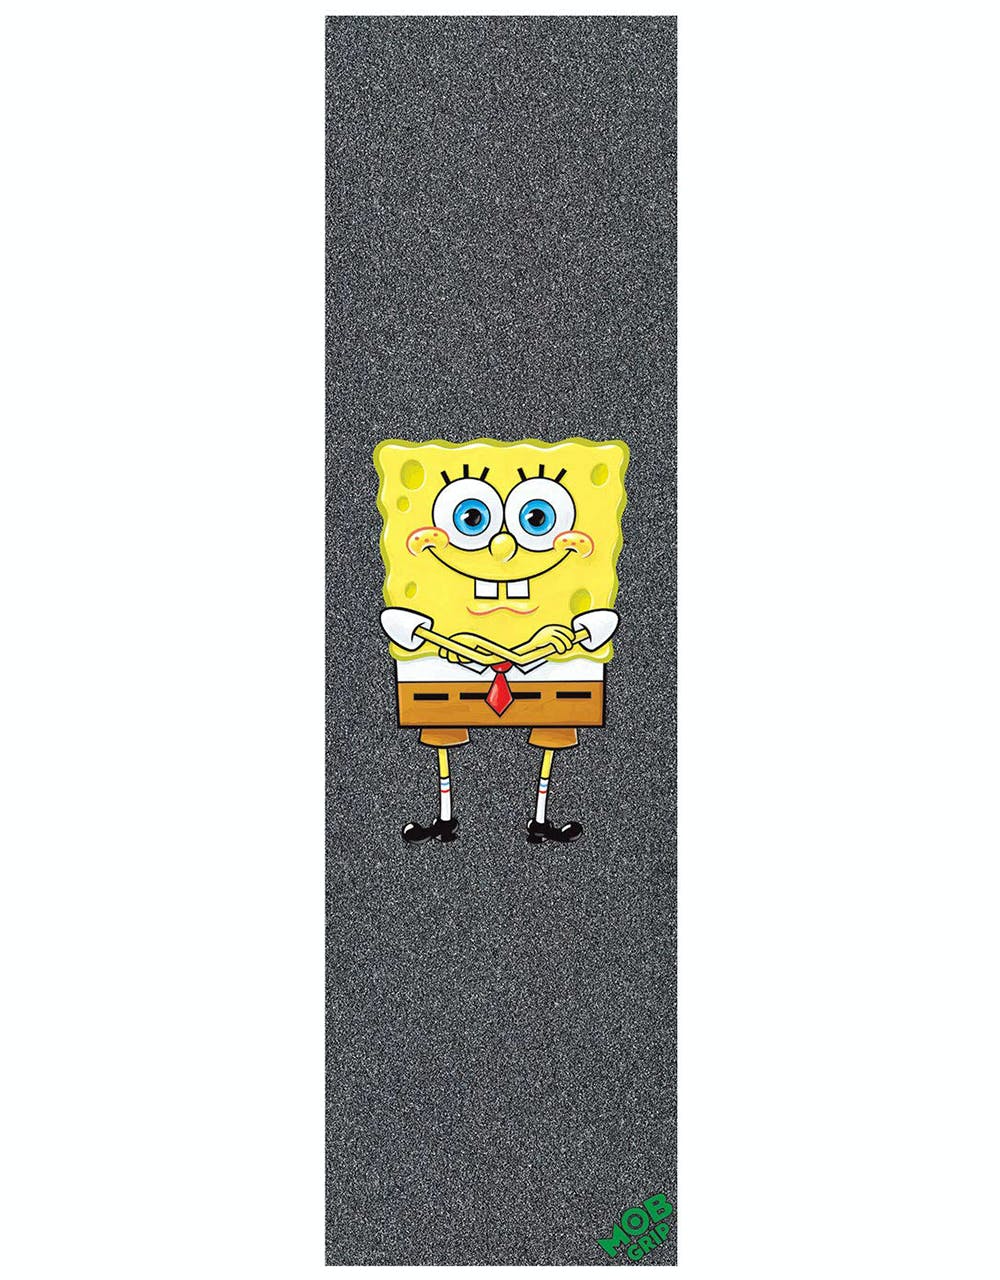 MOB x SpongeBob SquarePants SB 9" Graphic Grip Tape Sheet